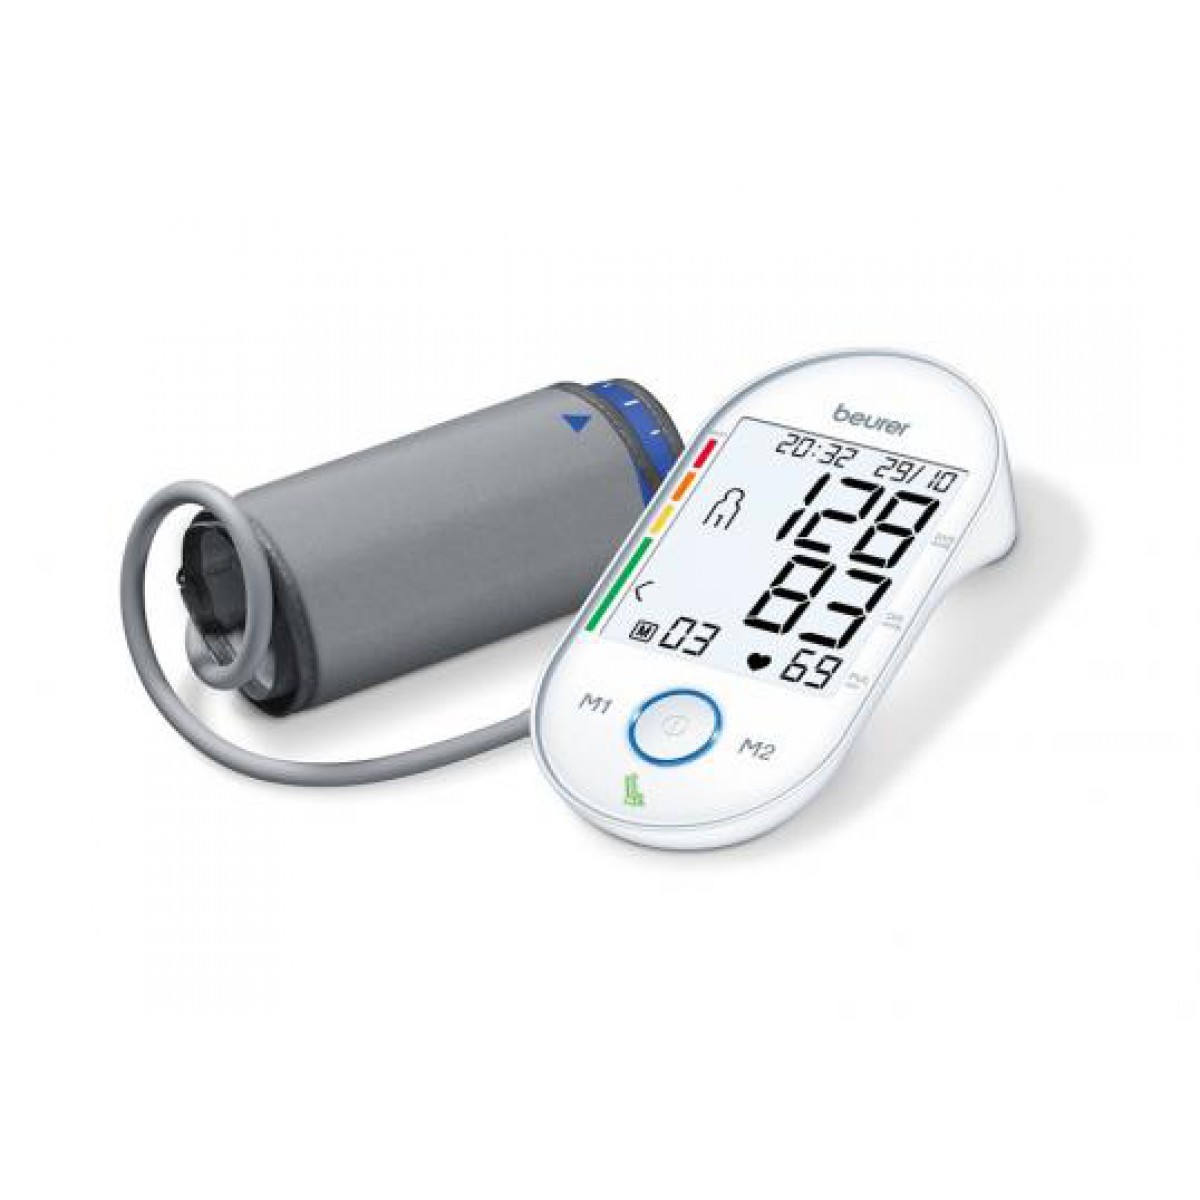 Bevidst Modig på trods af Køb den fuldautomatiske Beurer BM 55 Blodtryksmåler